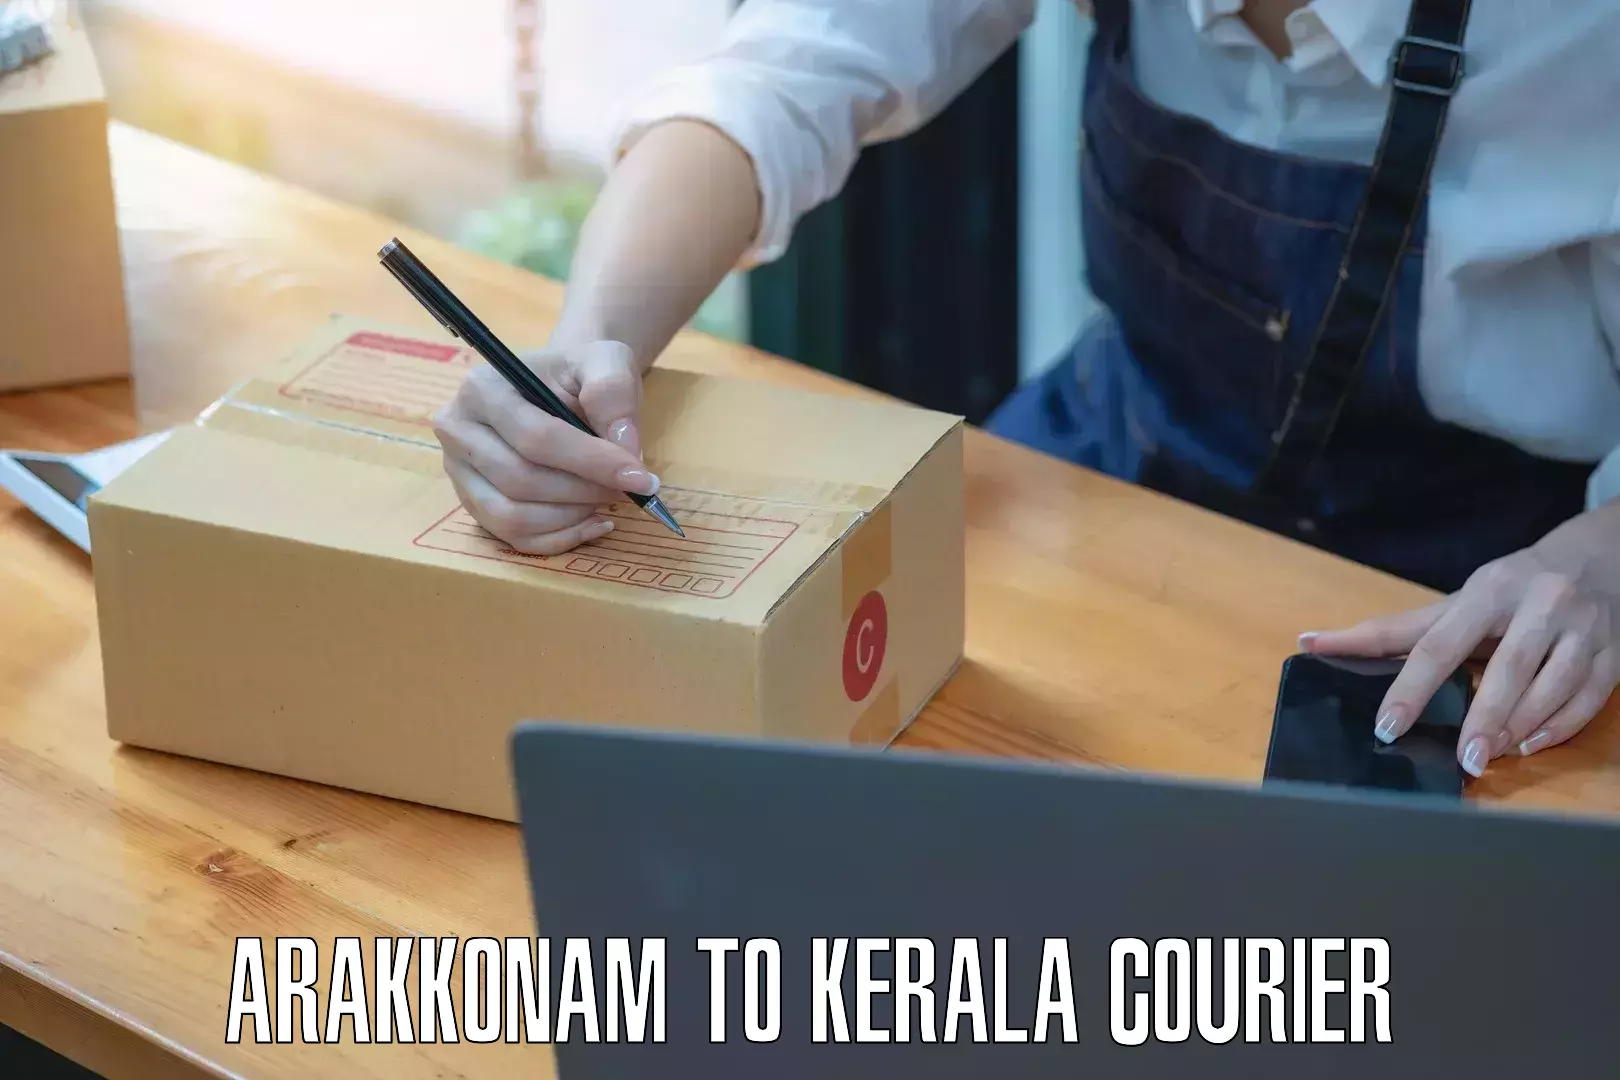 Nationwide delivery network Arakkonam to Kadanad